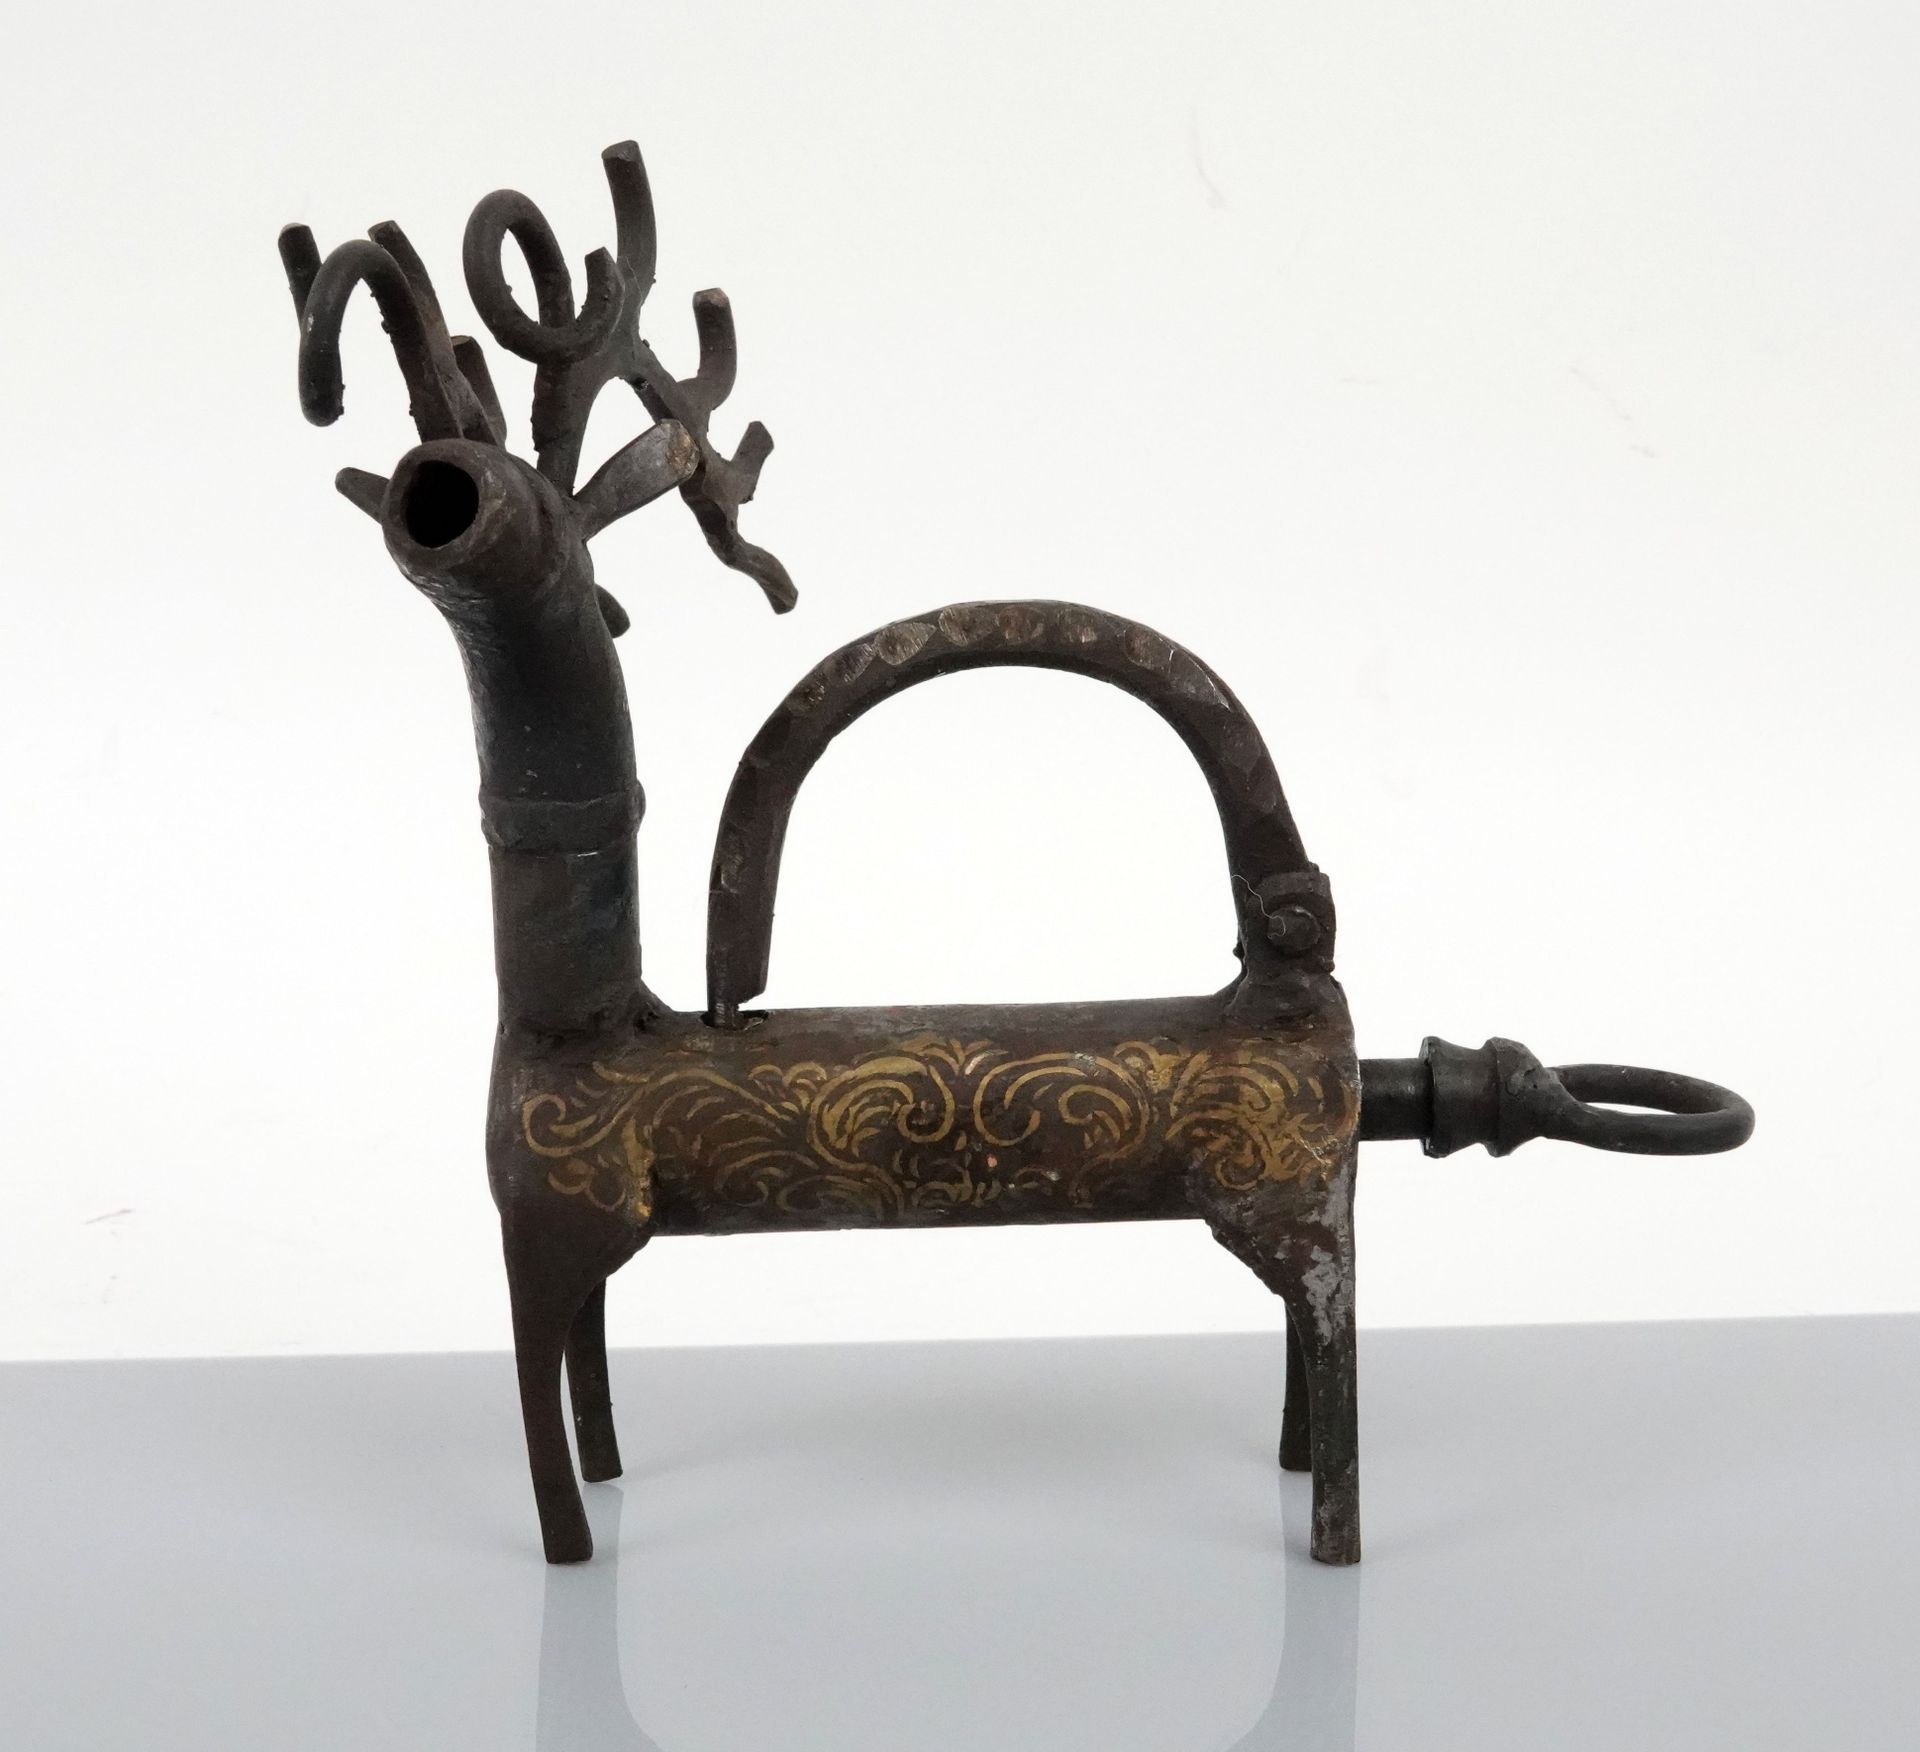 Null 带雄鹿装饰的伊斯兰挂锁，锁体上嵌有阿拉伯式花纹

金属17厘米